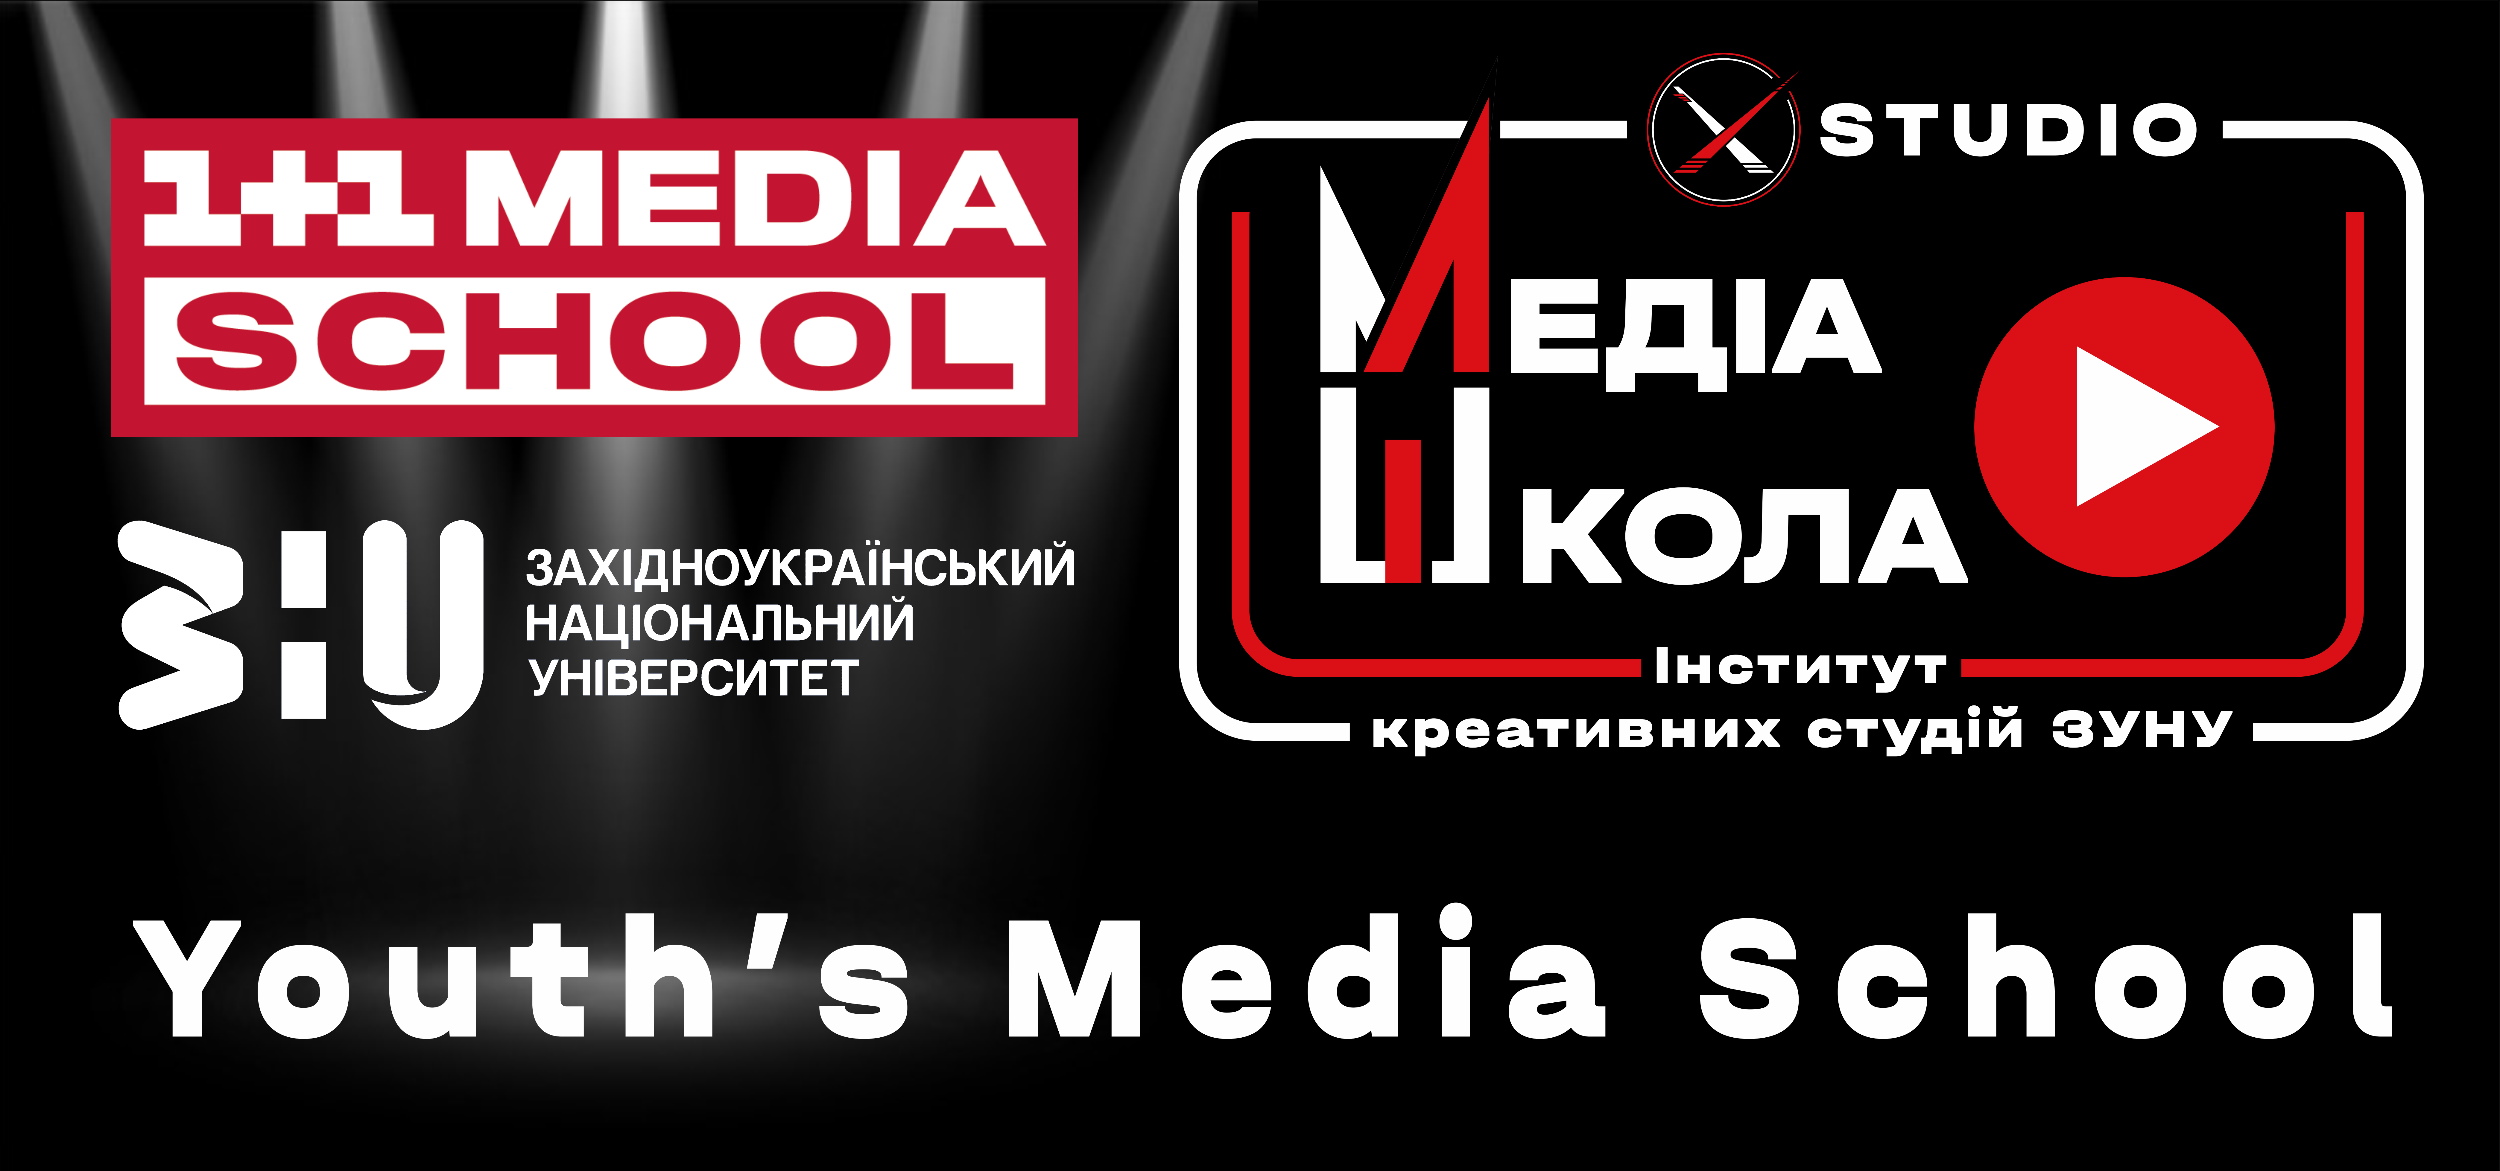 «Медіаграмотність» від 1+1 Media School в ЗУНУ!